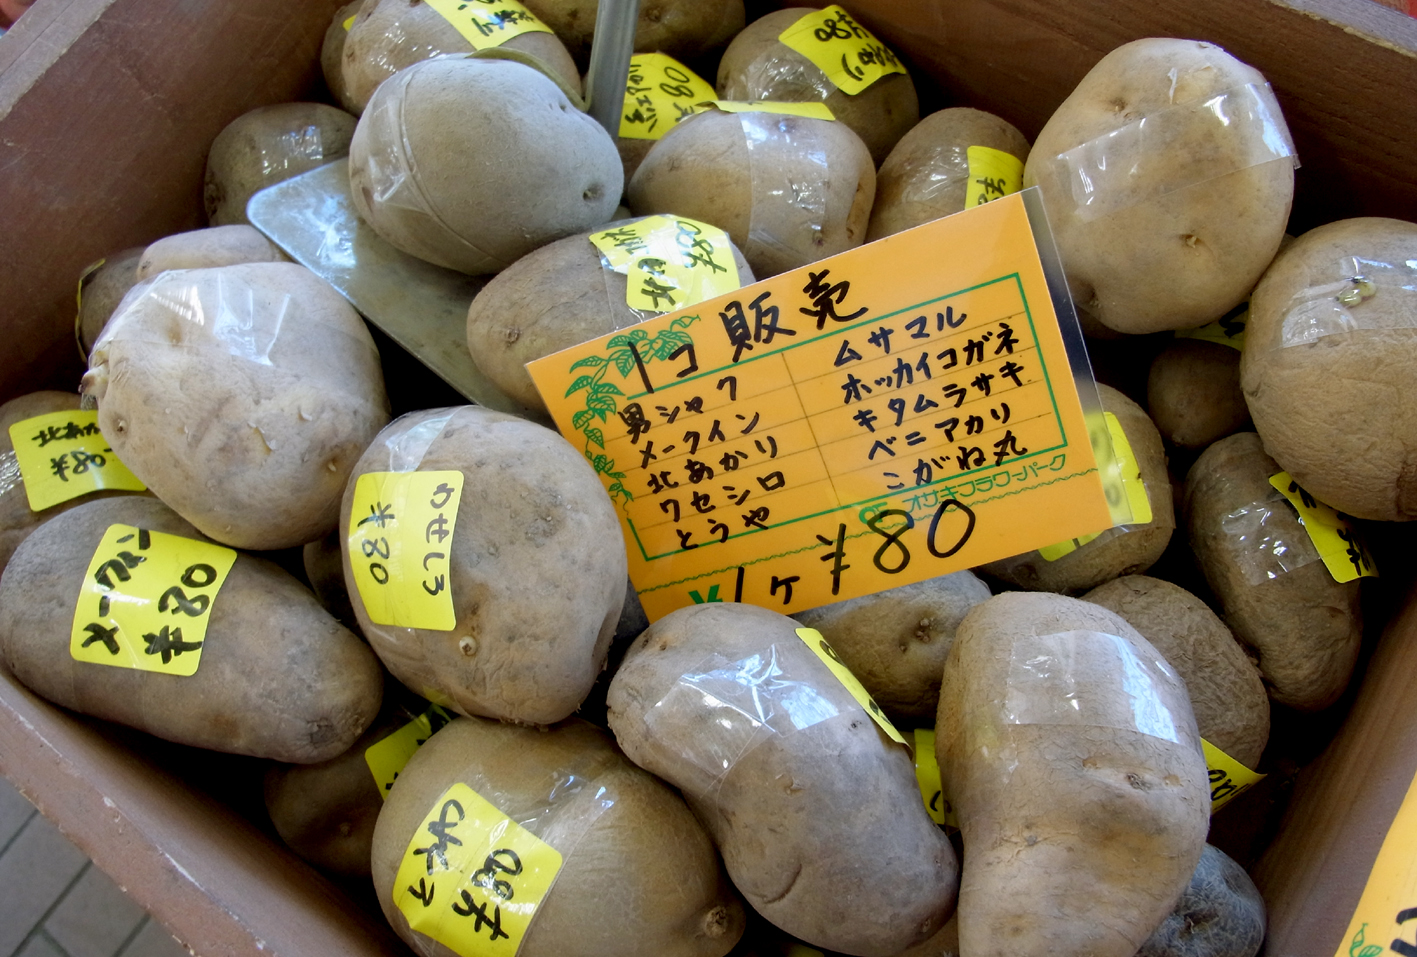 ジャガイモの種 バラ売り オザキフラワーパーク Staffblog